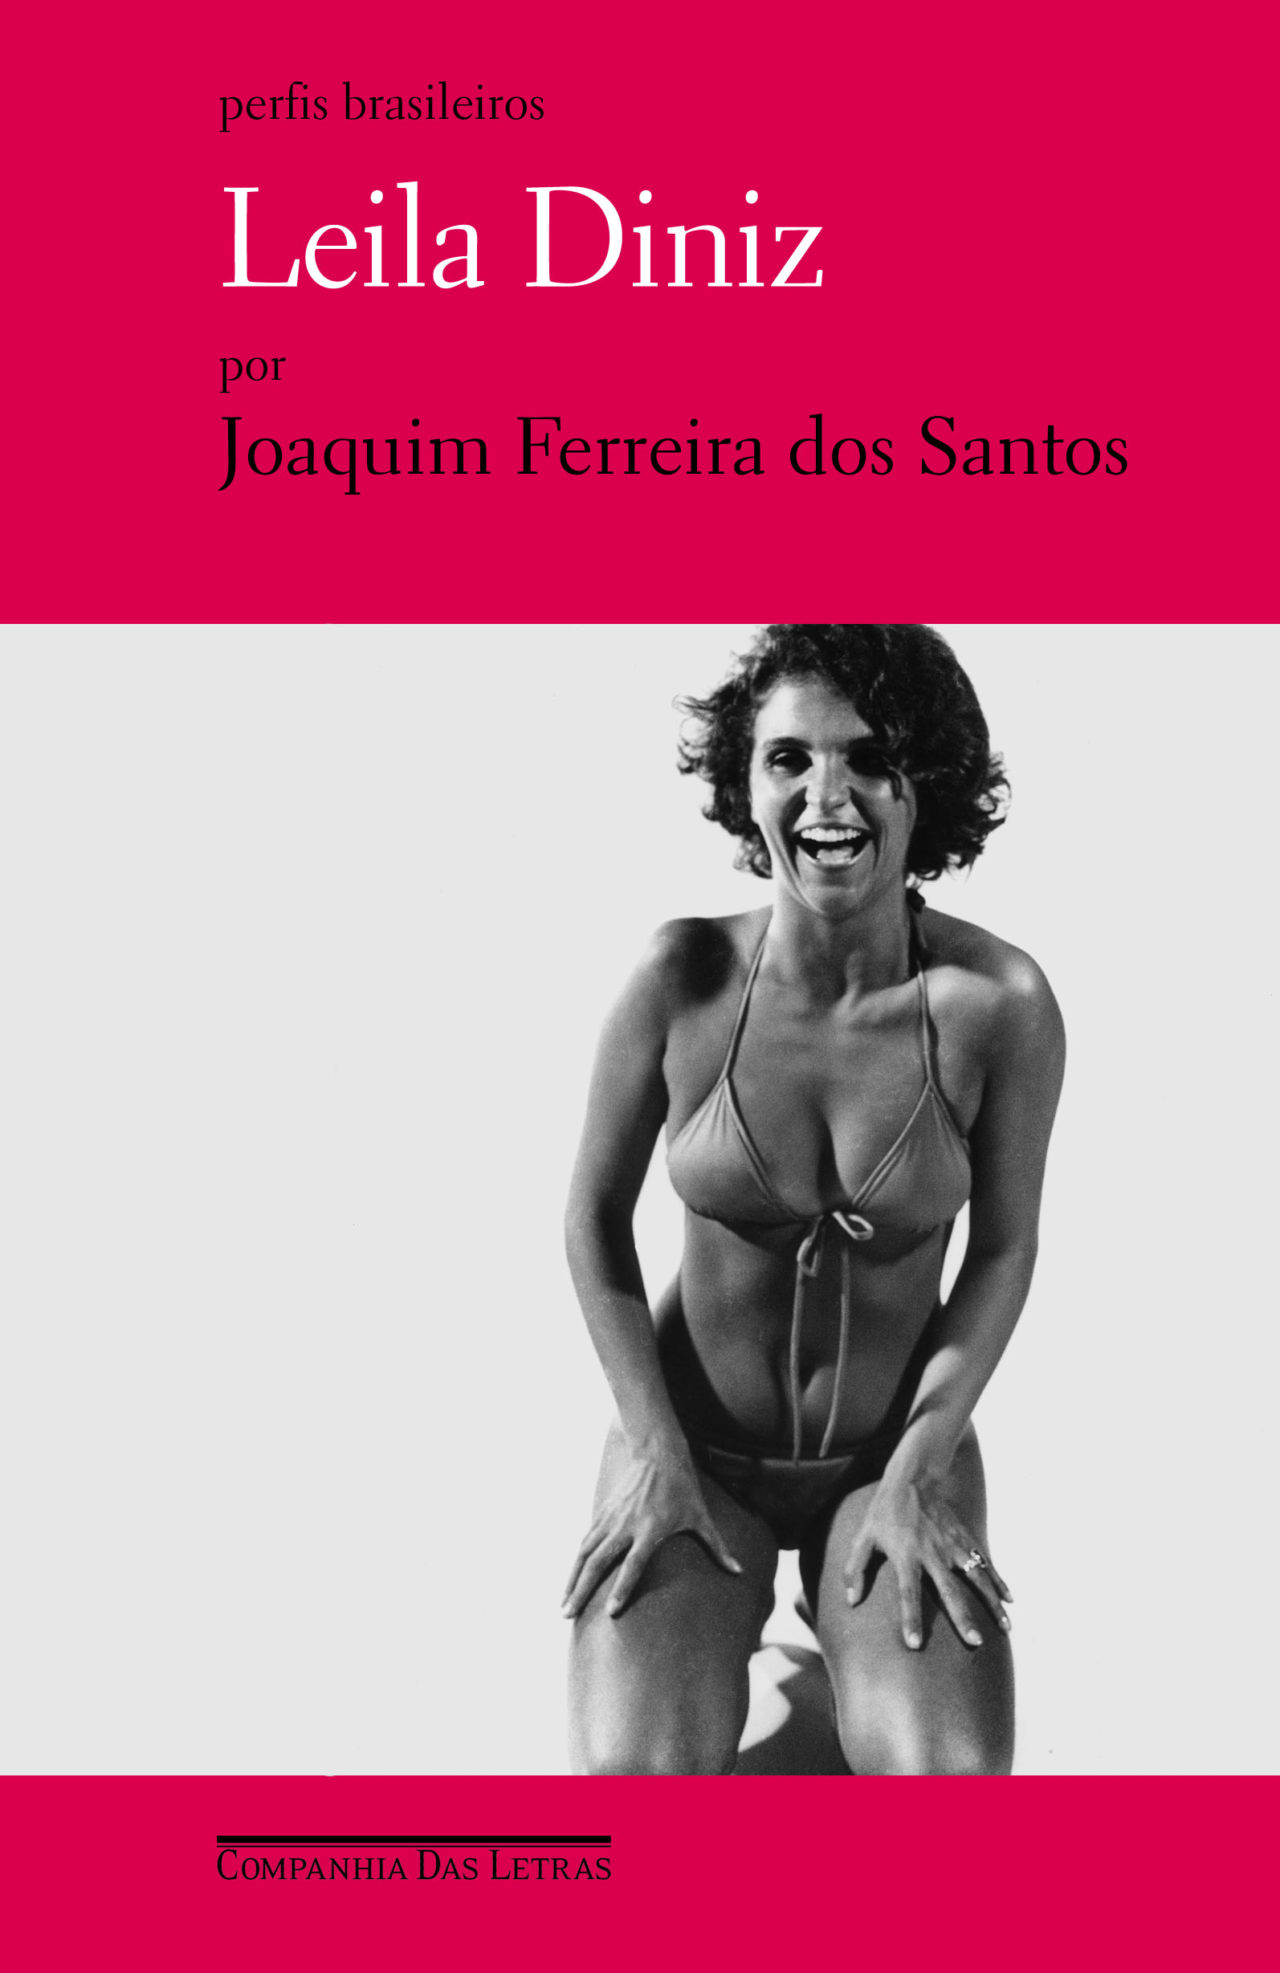 Capa da biografia de Leila Diniz, escrita por Joaquim Ferreira dos Santos